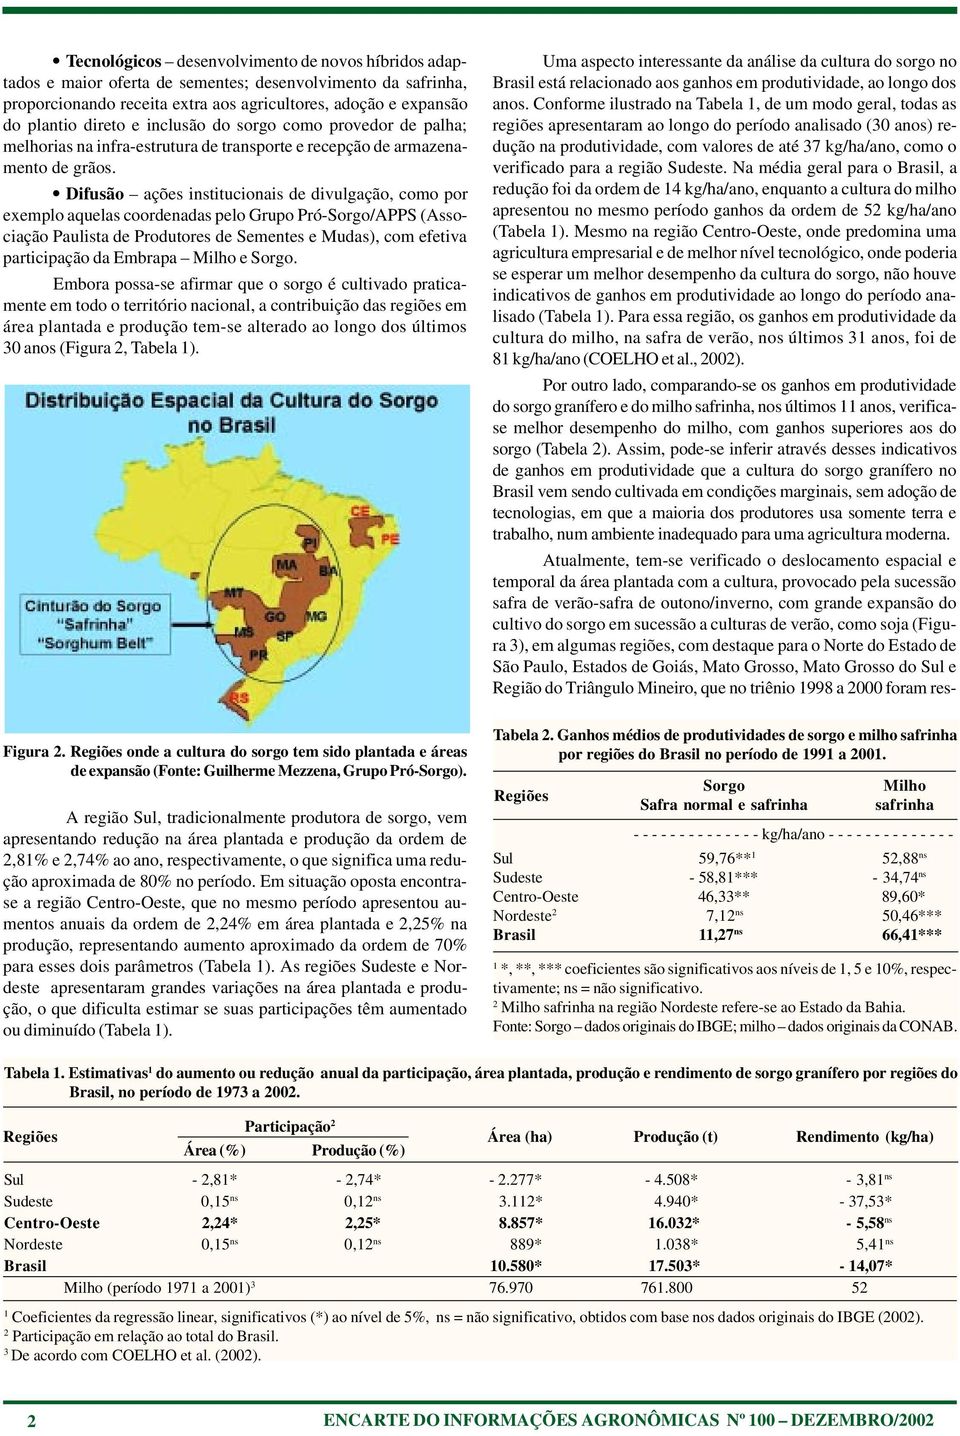 Difusão ações institucionais de divulgação, como por exemplo aquelas coordenadas pelo Grupo Pró-Sorgo/APPS (Associação Paulista de Produtores de Sementes e Mudas), com efetiva participação da Embrapa